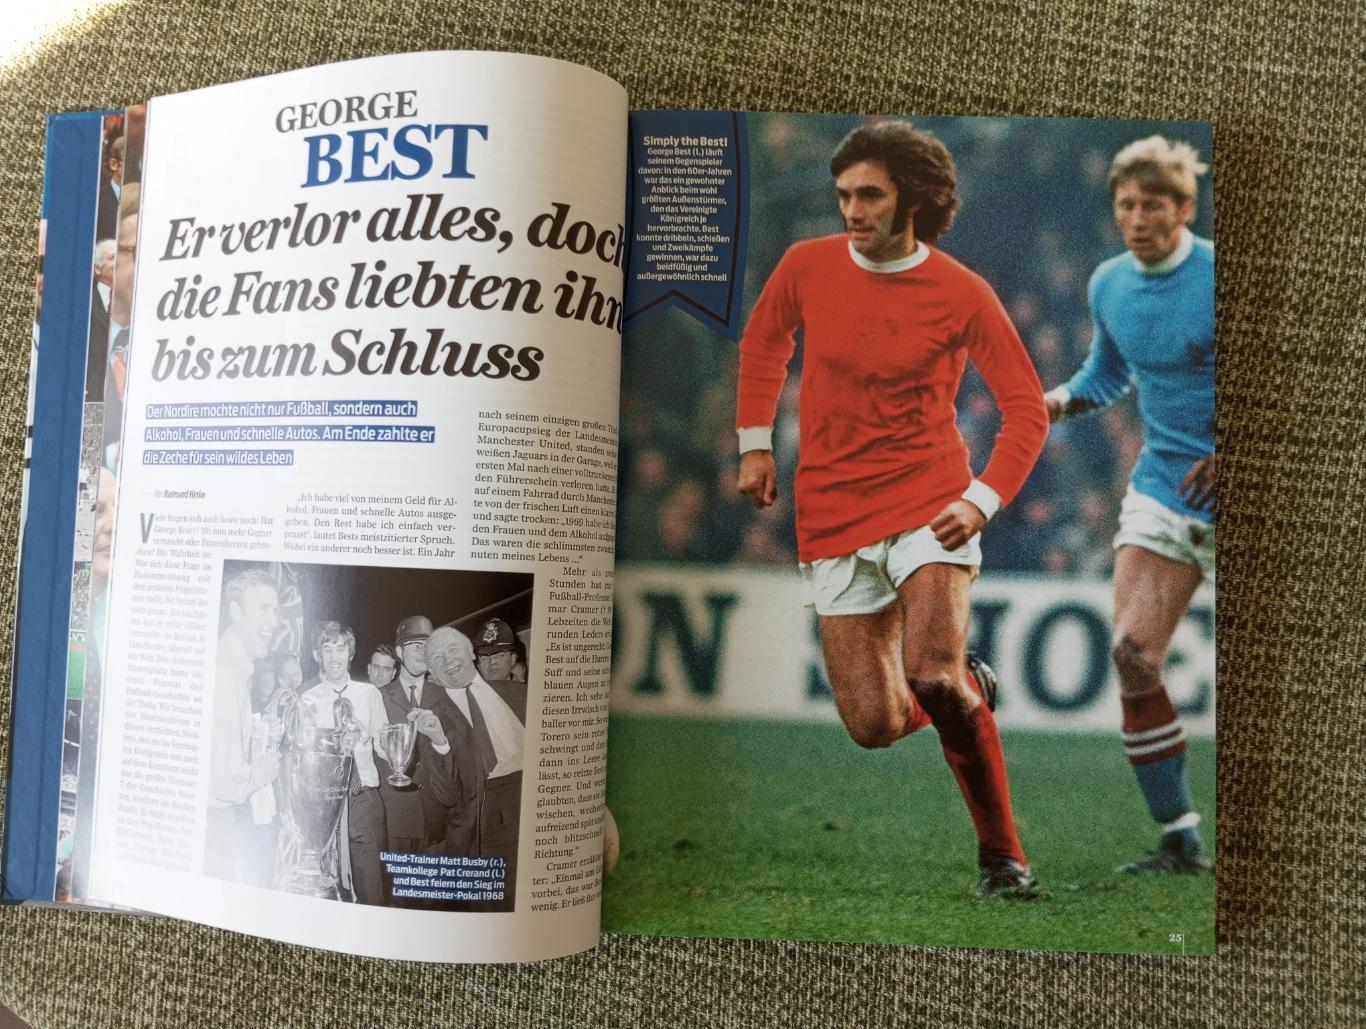 Легенды футбола (лучшие игроки мира) Книга.Sport Bild 3